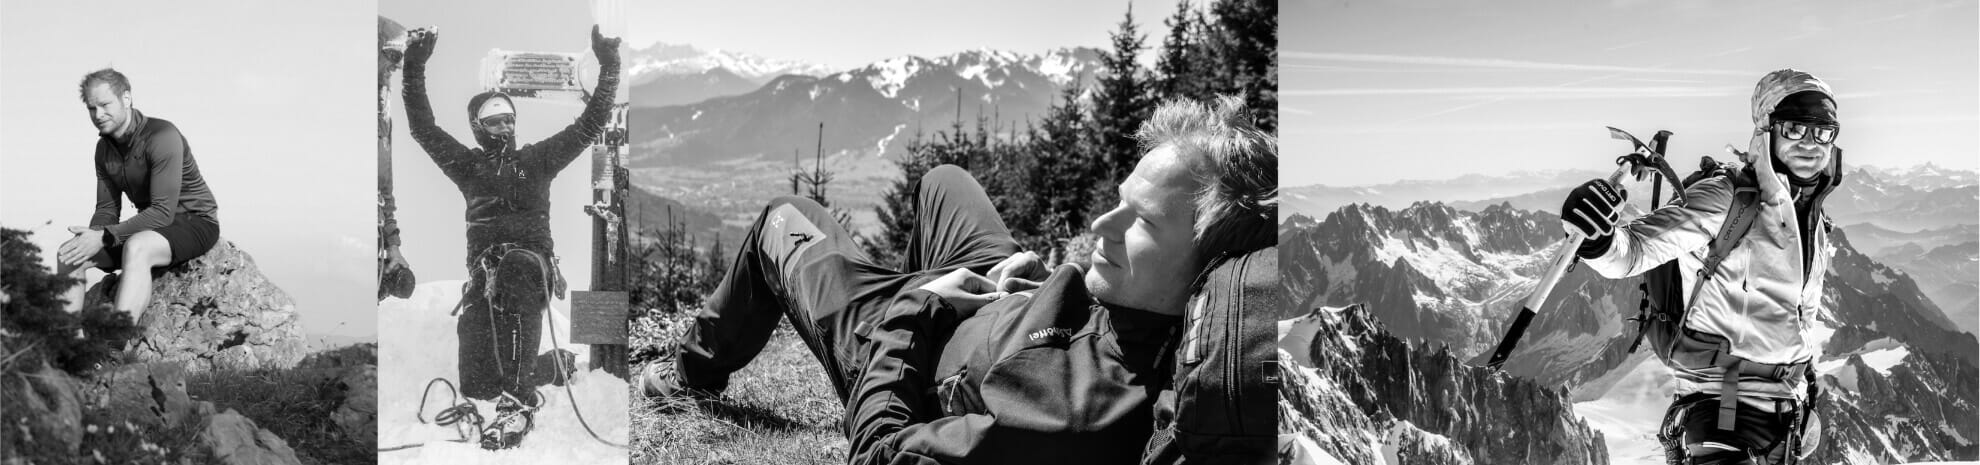 Portraitfotos in schwarz/weis vom Bergsteiger Marc Ahlbrand